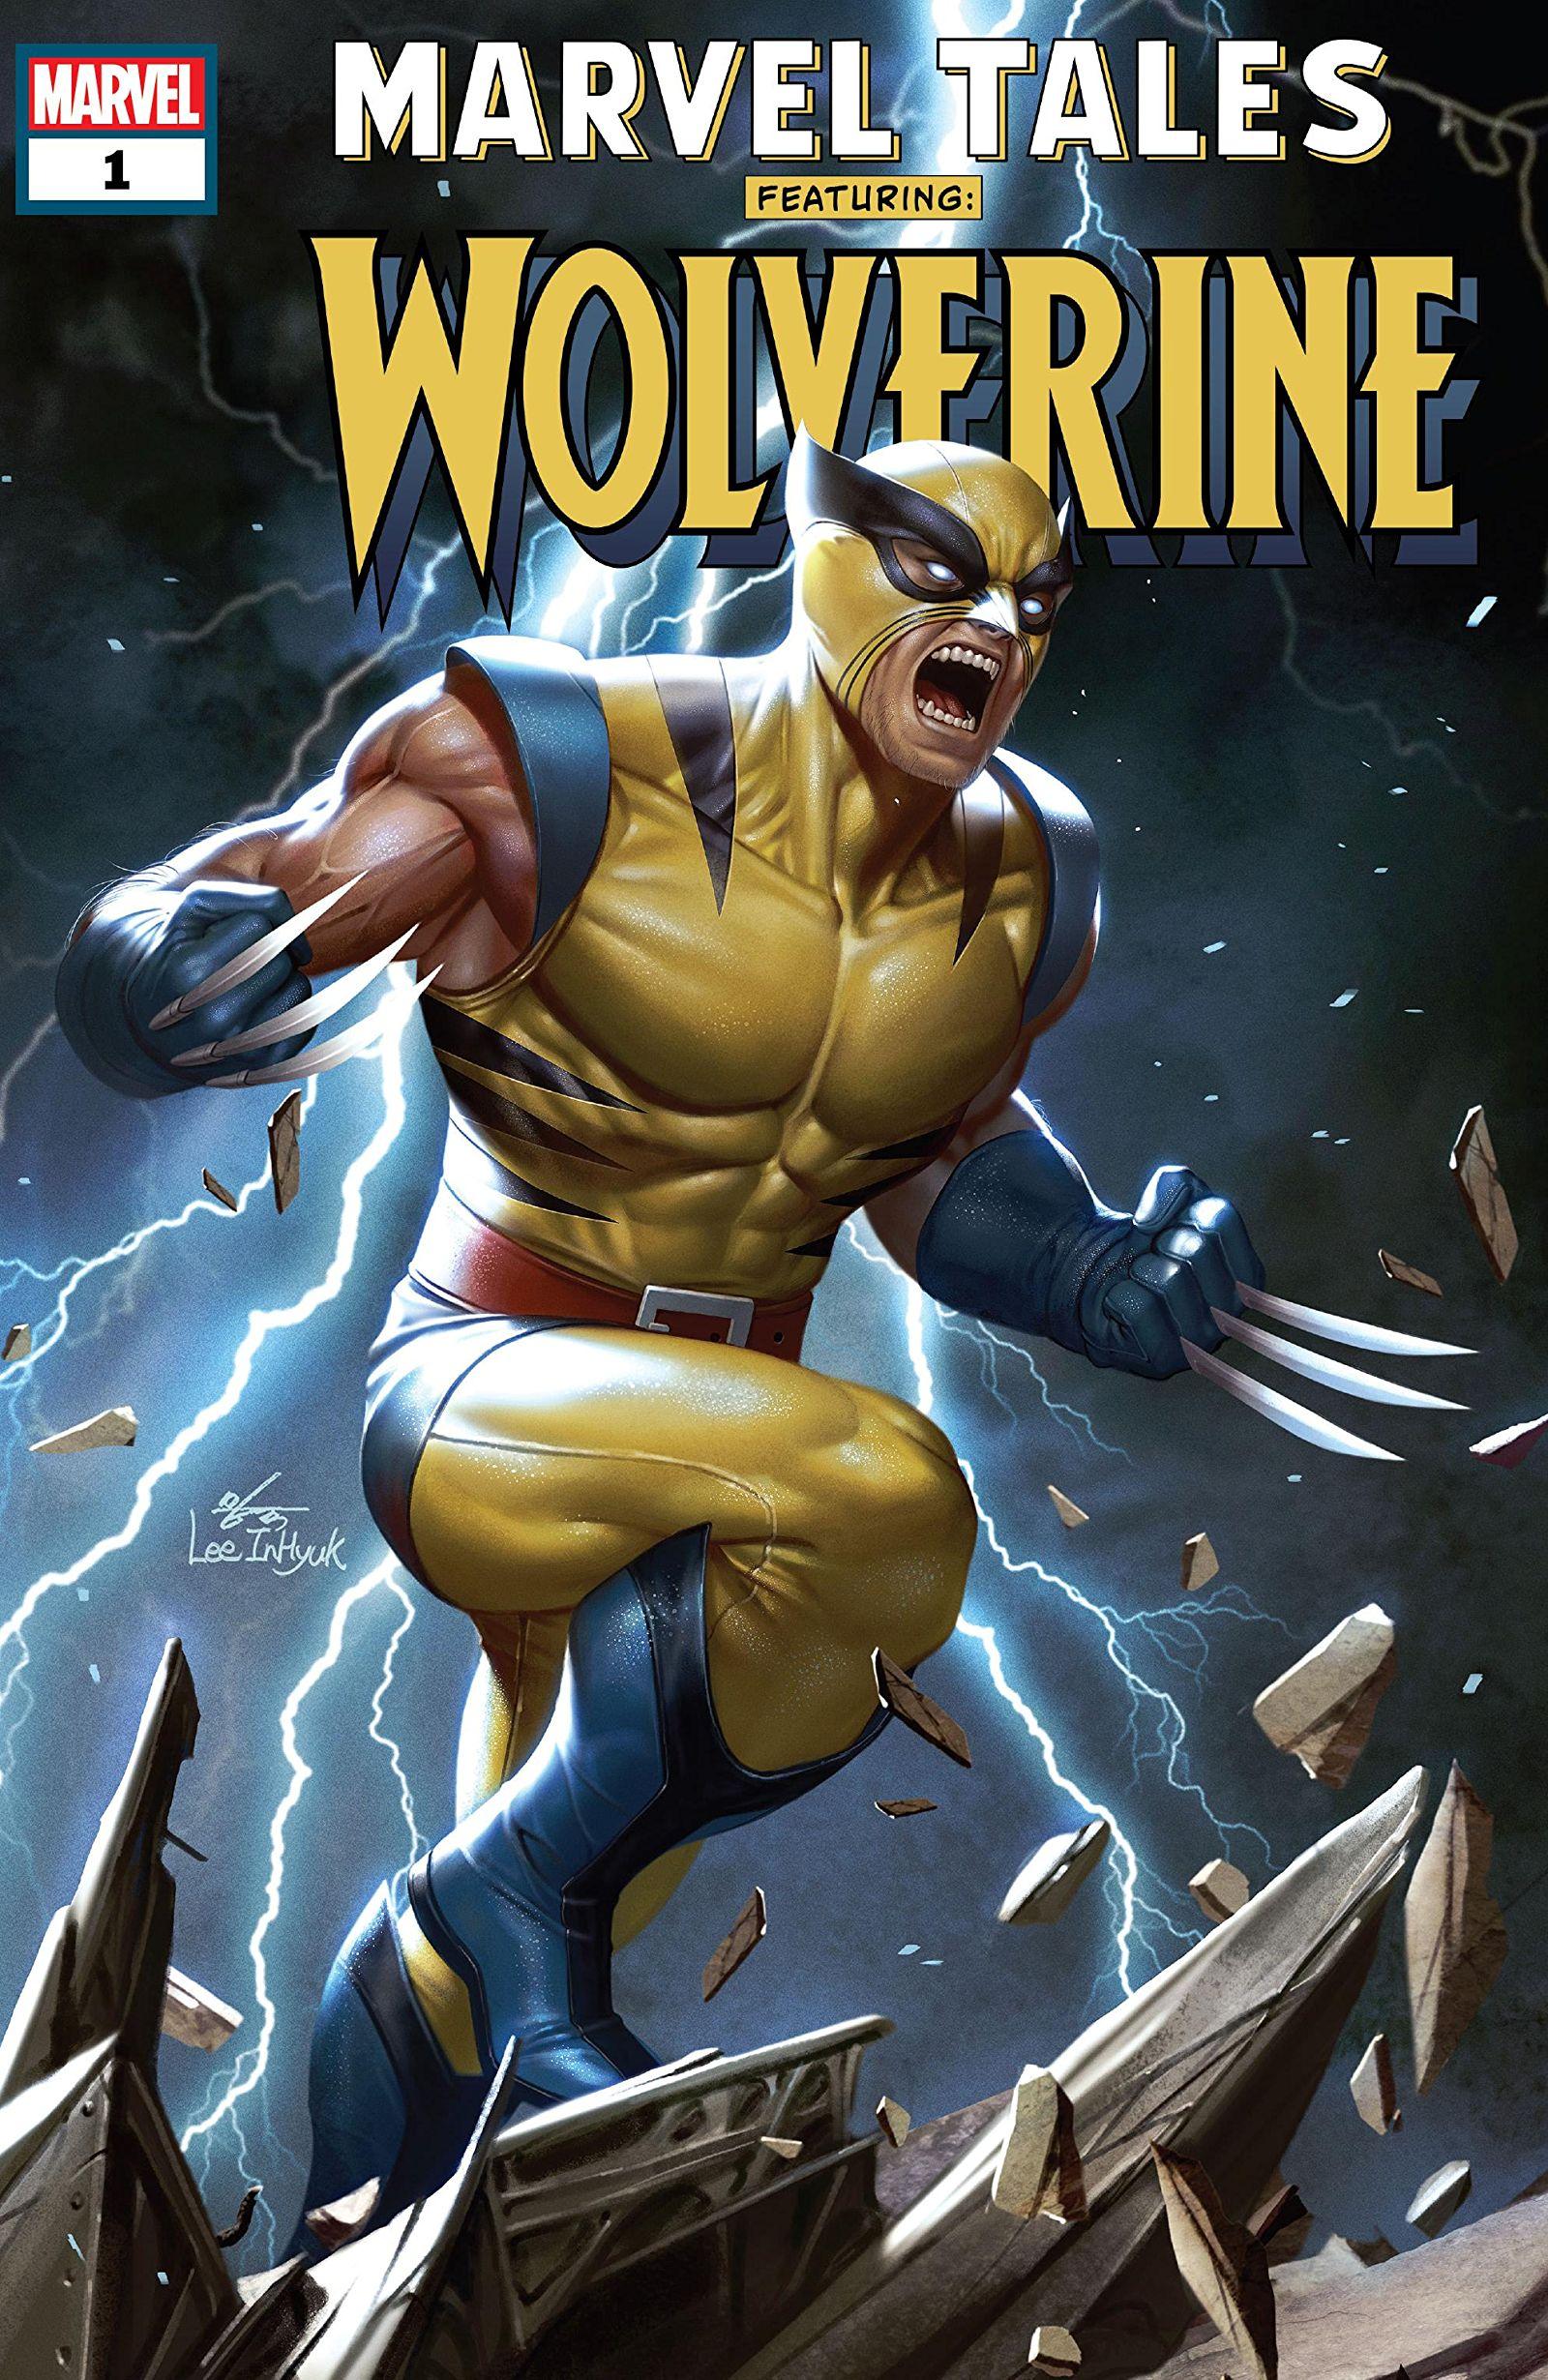 Marvel Tales: Wolverine Vol. 1 #1